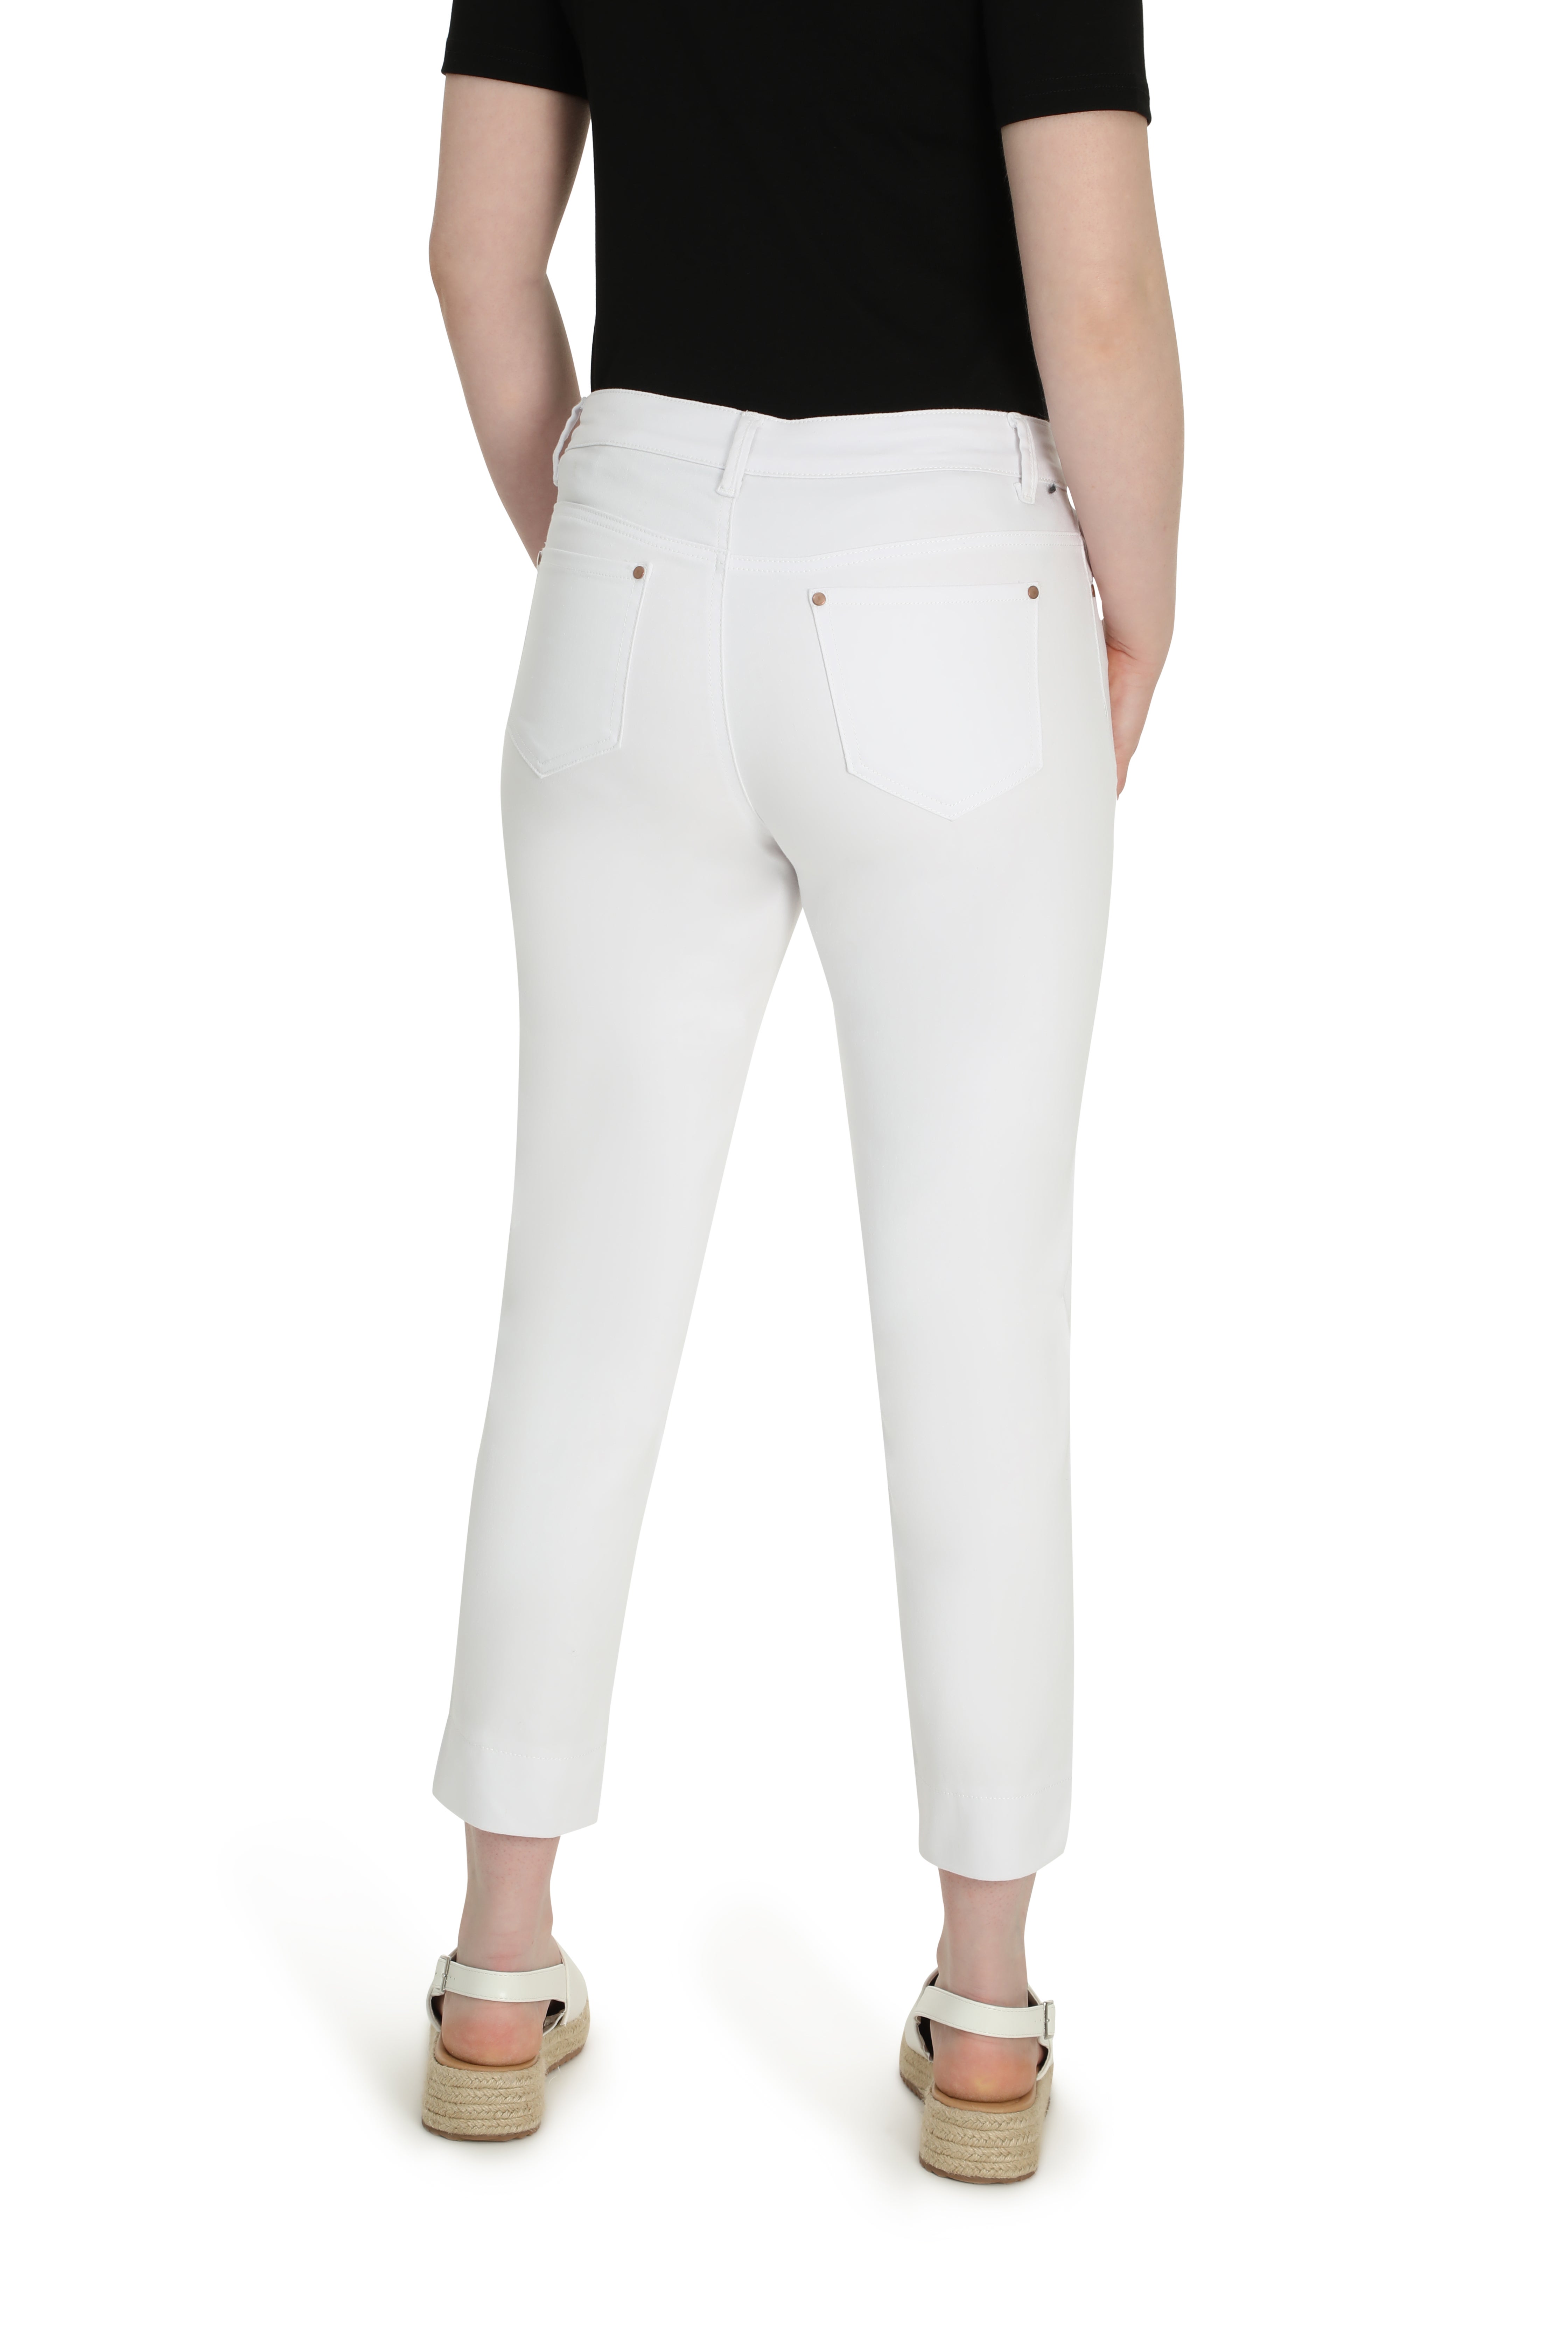 Luxe Denim Capri Jean in White